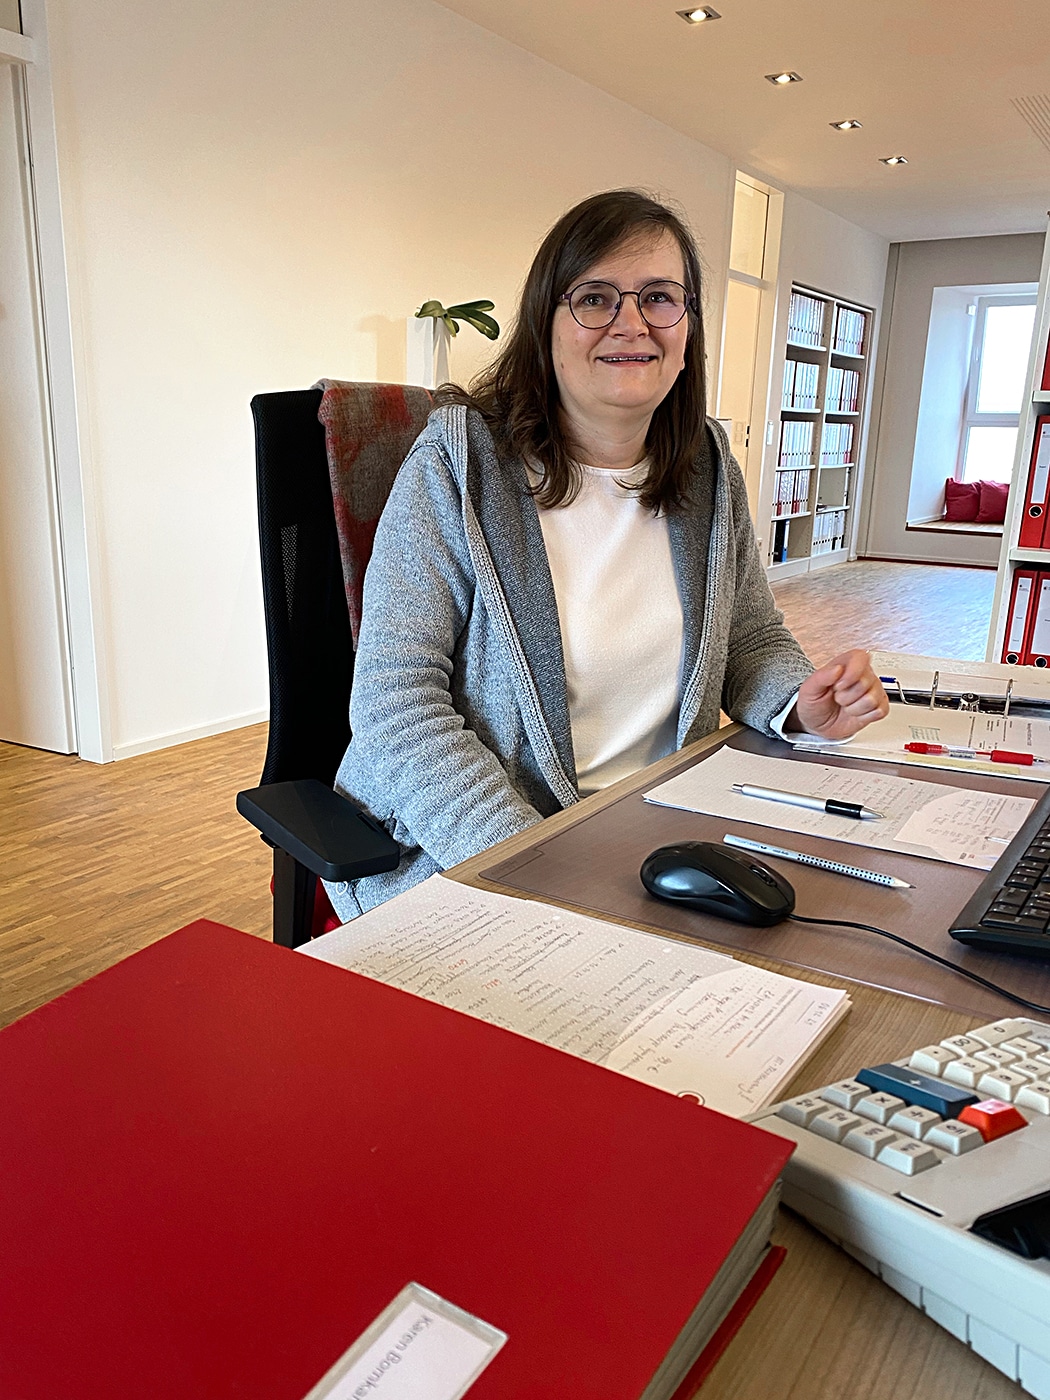 Steuerberater in Essen: Karen @ Steuerberatung Schulte – Lohnbuchhaltung, Bilanzbuchhaltung, Buchhaltung